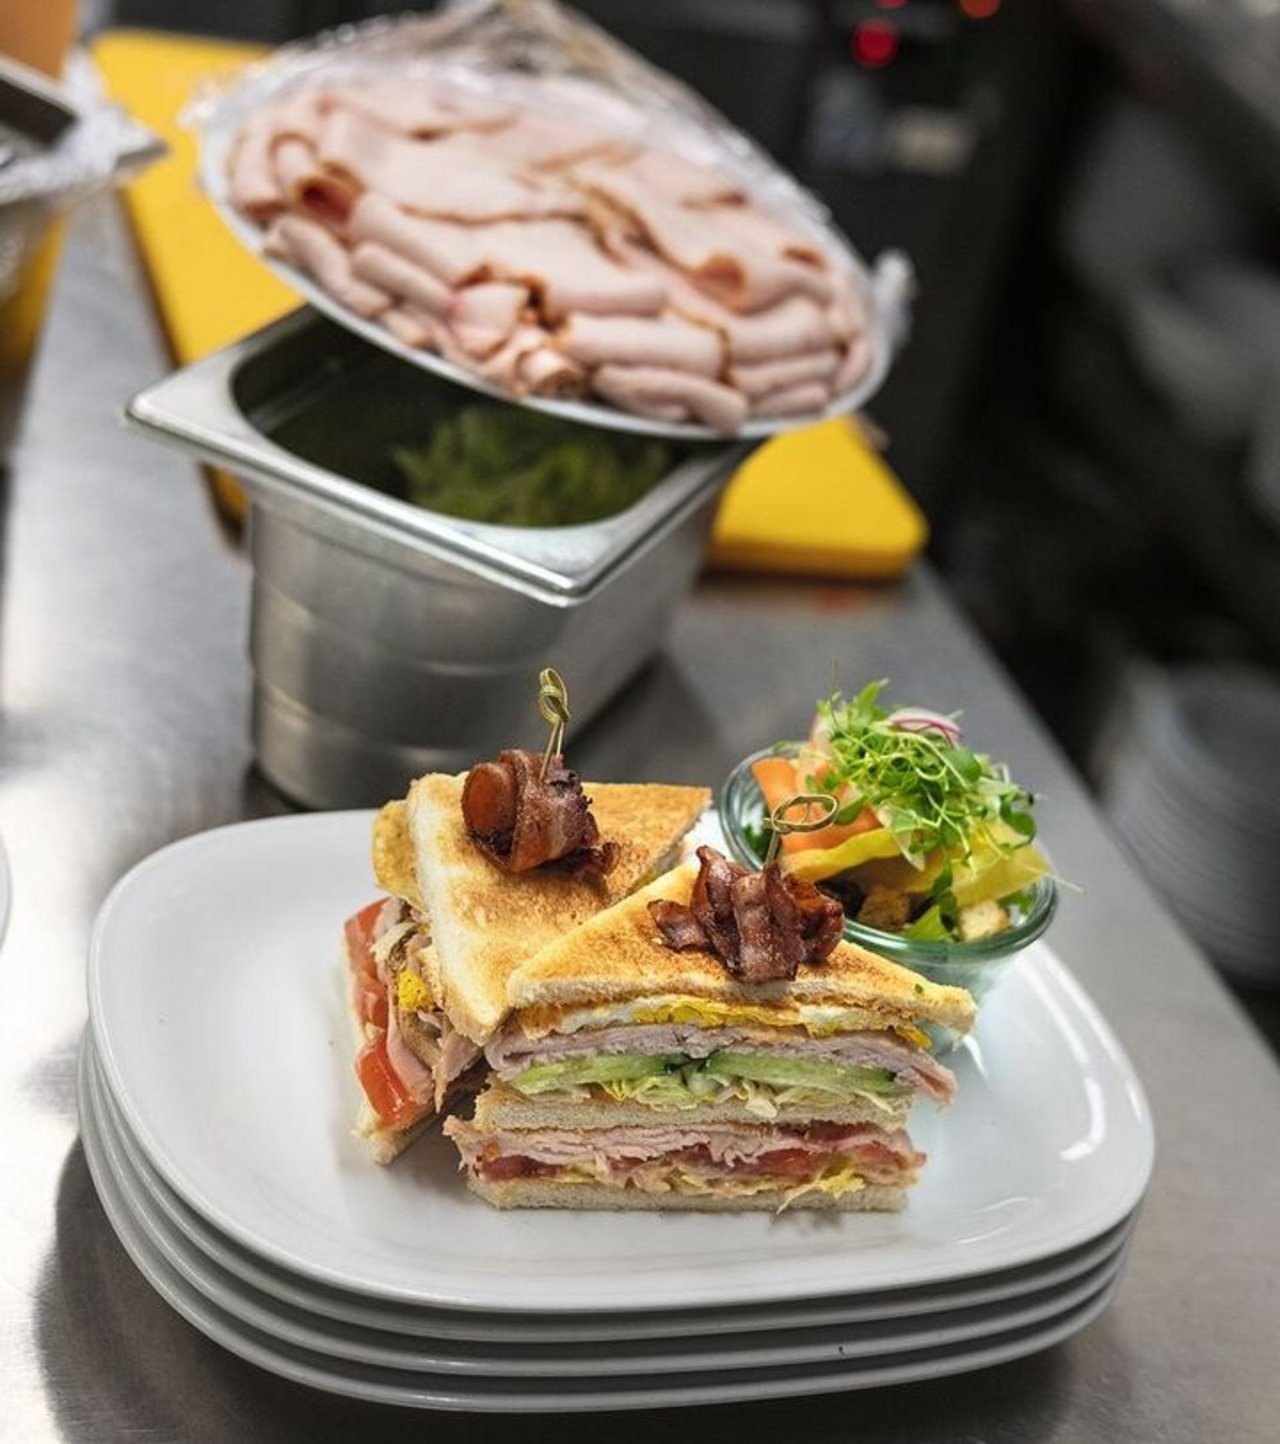 Das Club-Sandwich mit Trutenbrust gehört zu den beliebtesten Gerichten in den Giessbach-Restaurants.